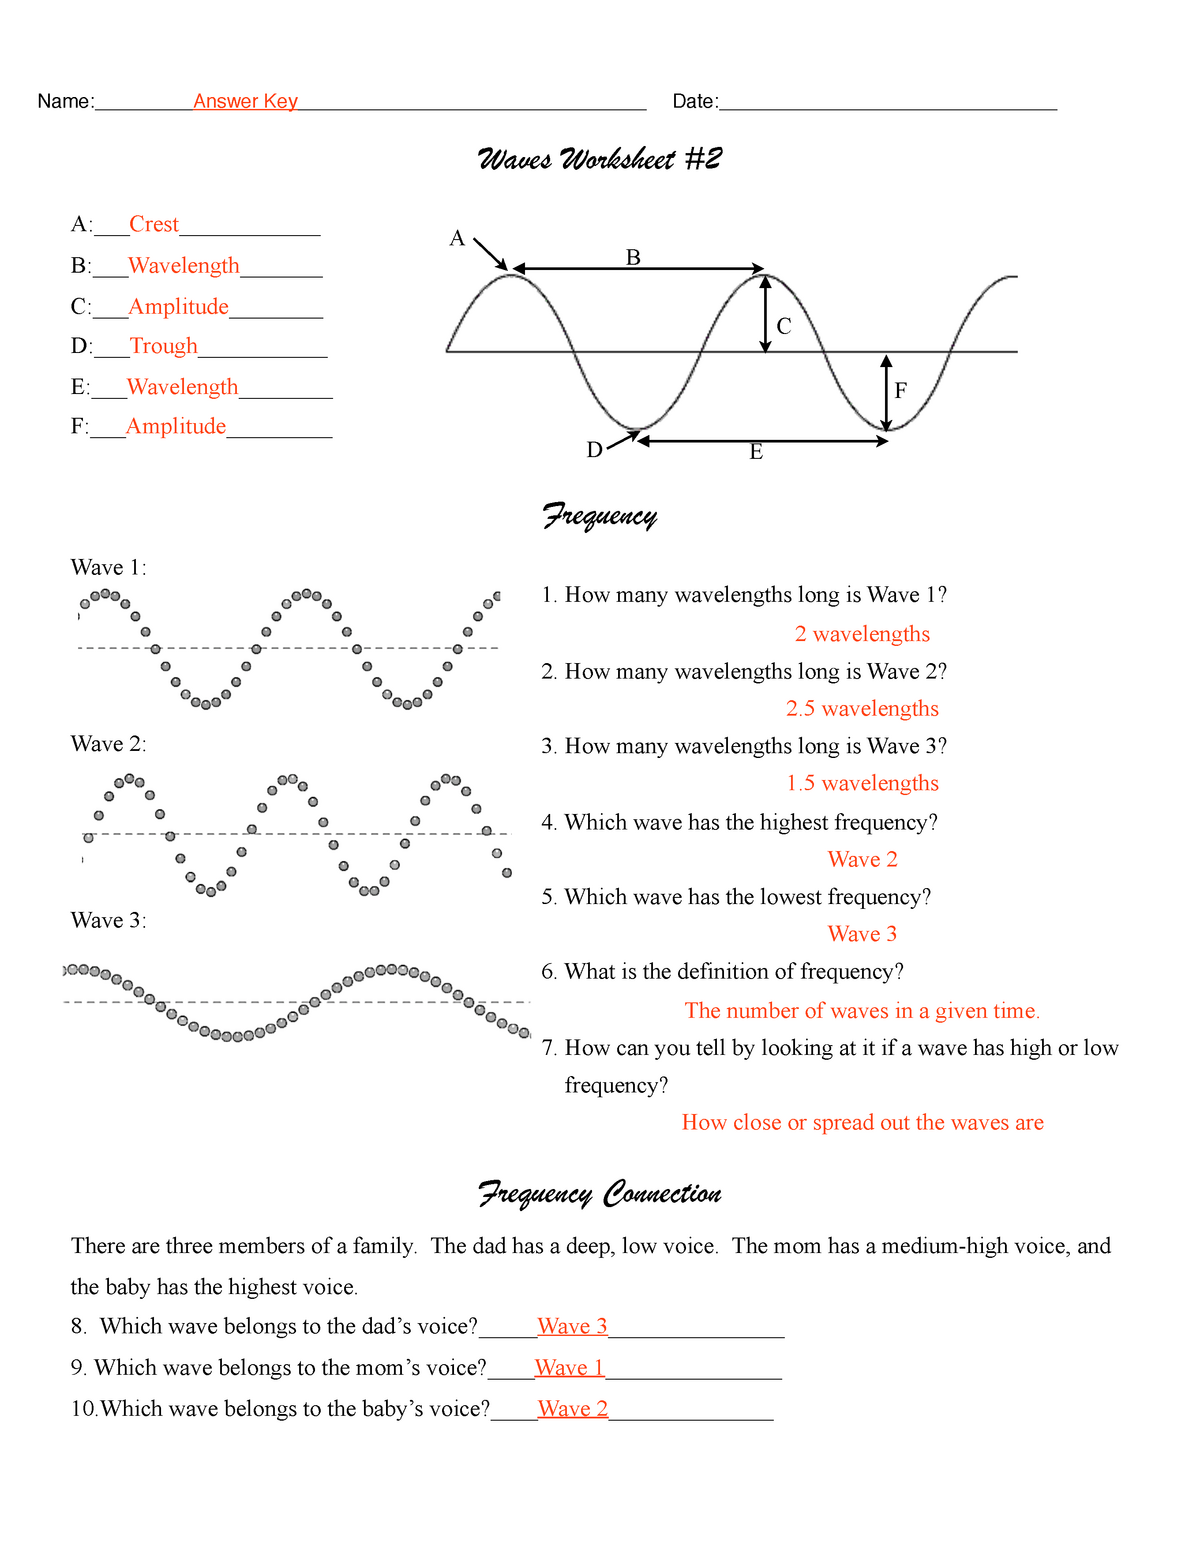 21 wave worksheet answer pdf - Waves Worksheet A Pertaining To Waves Worksheet 1 Answers